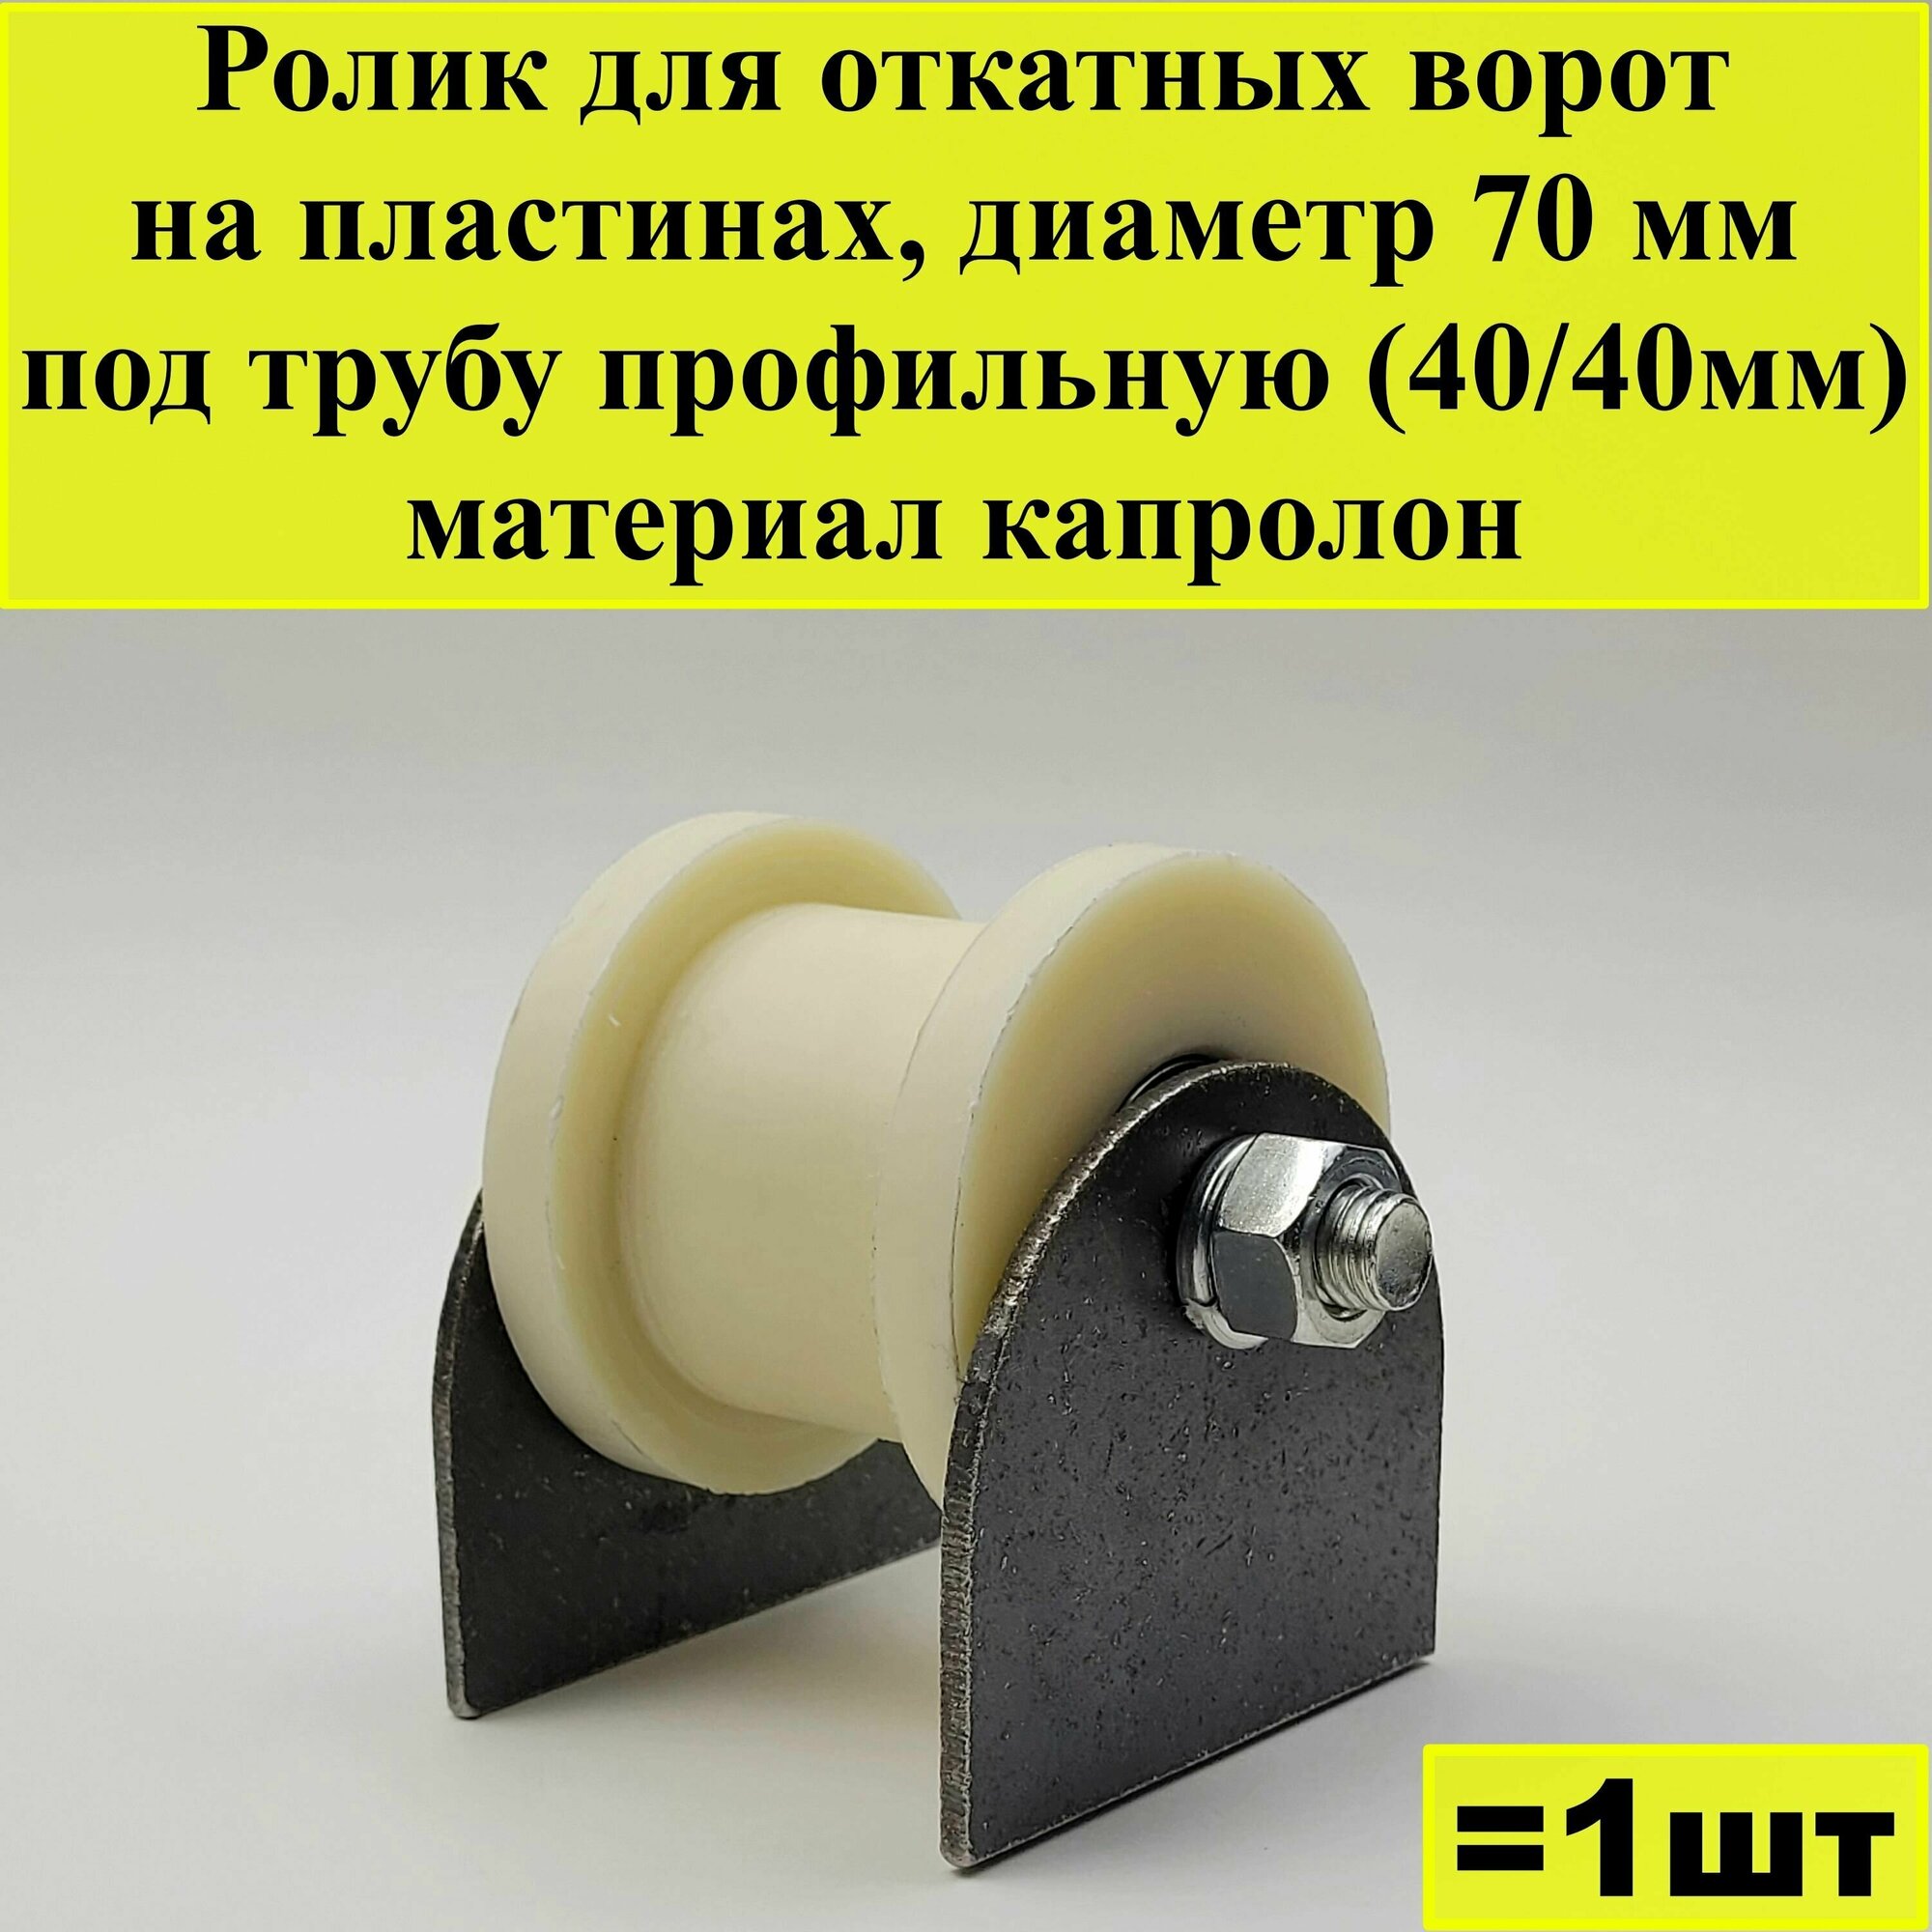 Ролик для откатных ворот на пластинах, диаметр 70 мм, под трубу профильную (40/40мм), материал капролон, 1 шт